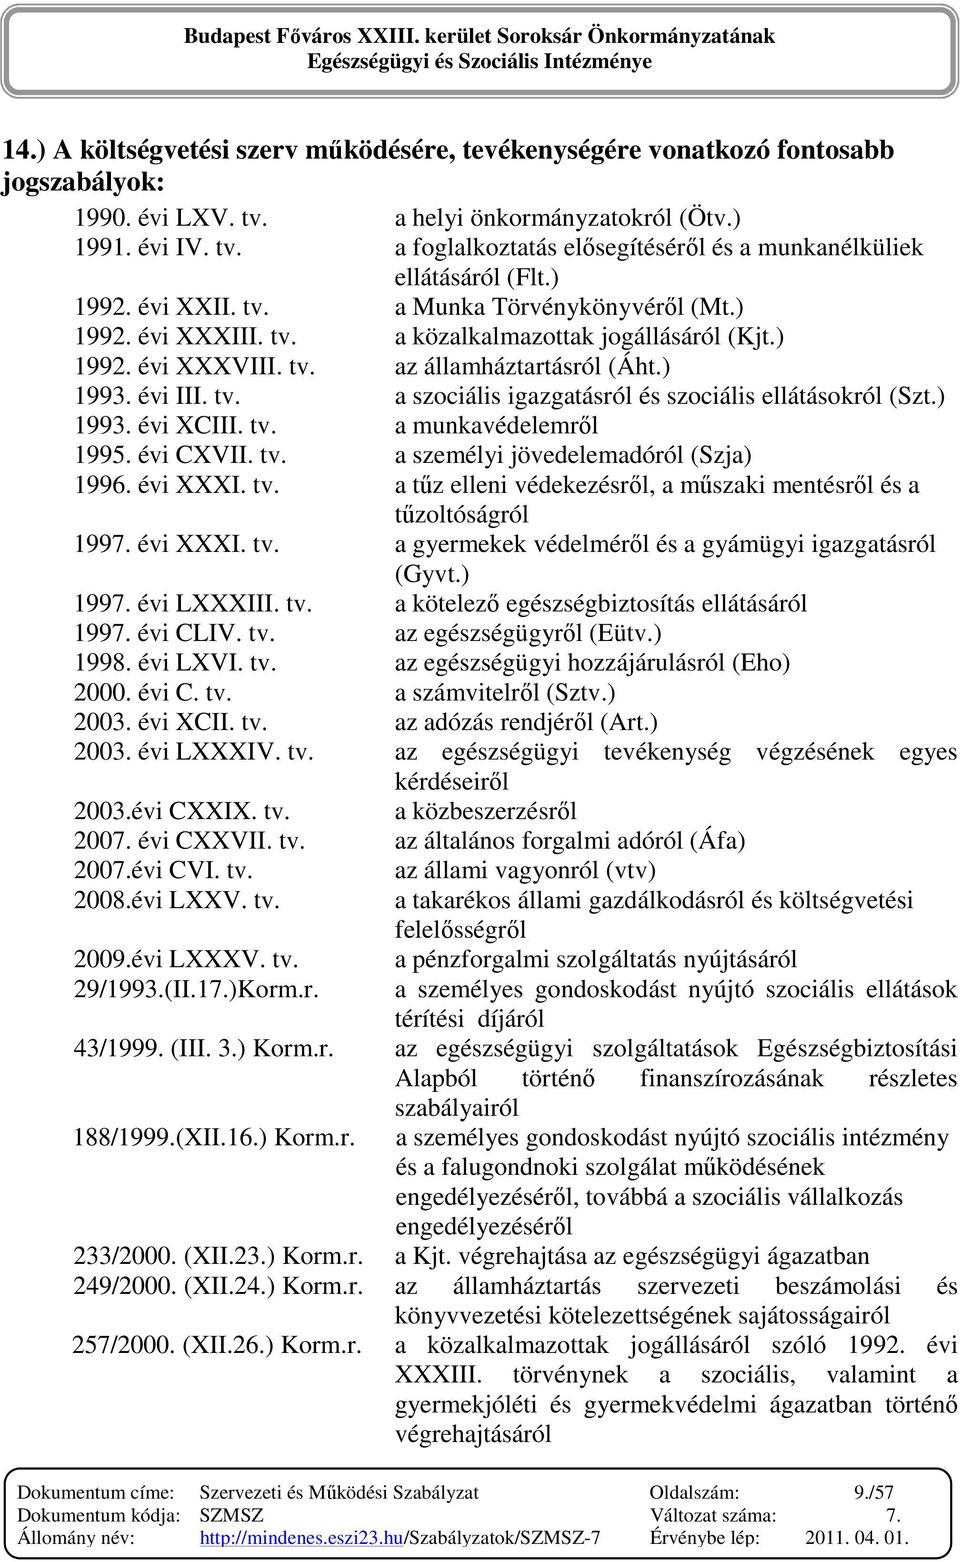 ) 1993. évi XCIII. tv. a munkavédelemrıl 1995. évi CXVII. tv. a személyi jövedelemadóról (Szja) 1996. évi XXXI. tv. a tőz elleni védekezésrıl, a mőszaki mentésrıl és a tőzoltóságról 1997. évi XXXI. tv. a gyermekek védelmérıl és a gyámügyi igazgatásról (Gyvt.